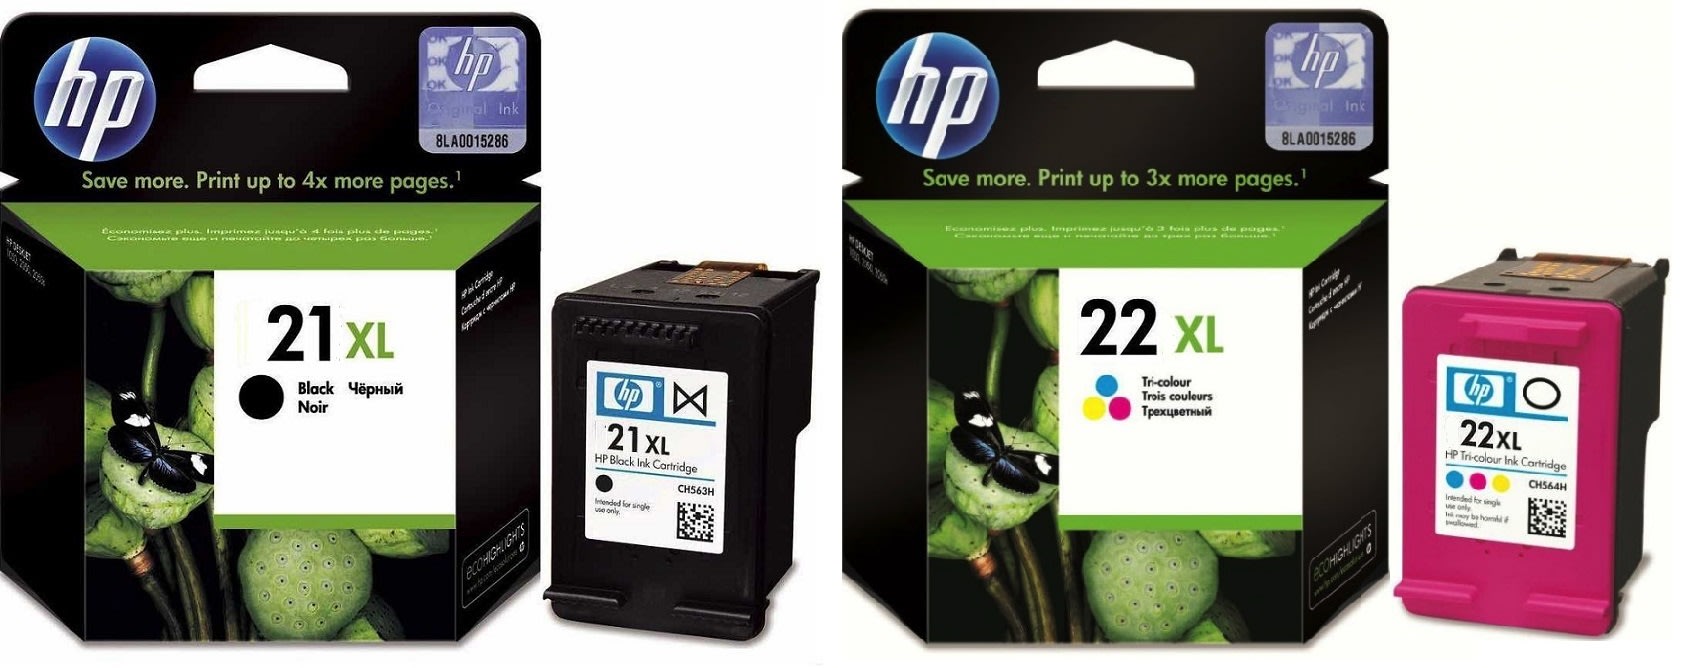 Картриджи hp 21XL 22XL для HP Deskjet F390. Купить комплект оригинальных чернил.